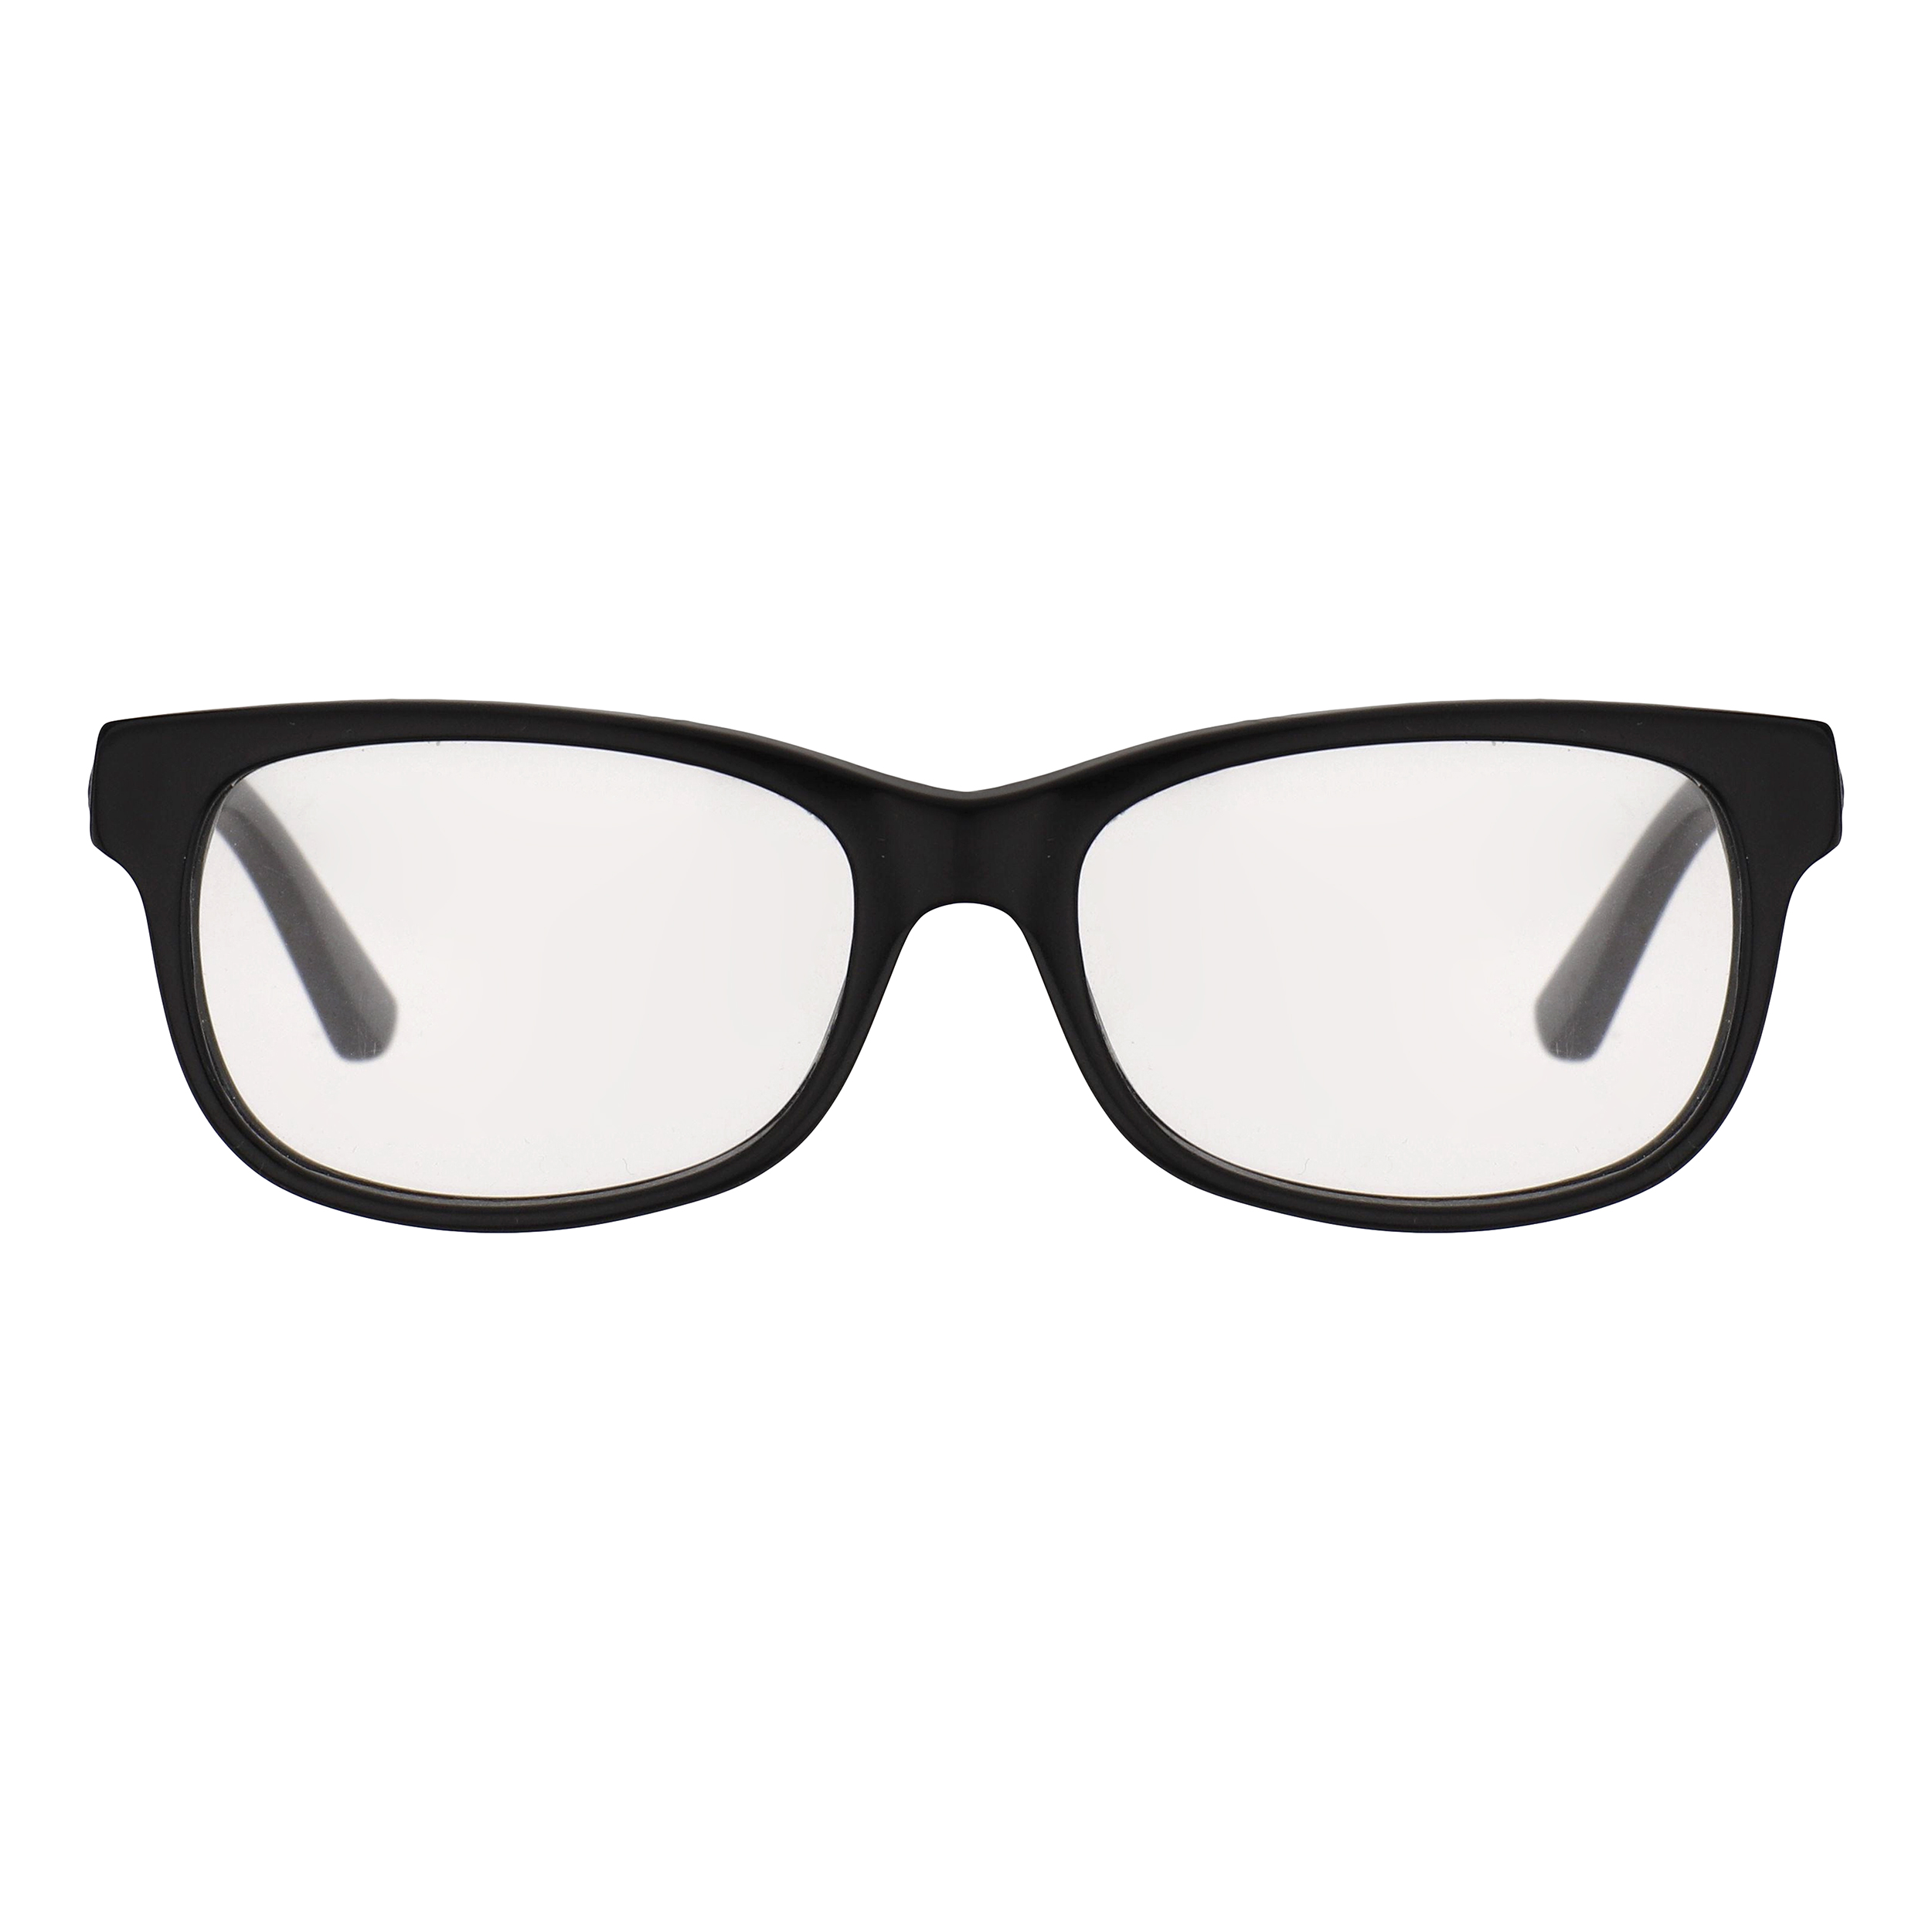 فریم عینک طبی بچگانه لاگوست مدل 3612-1